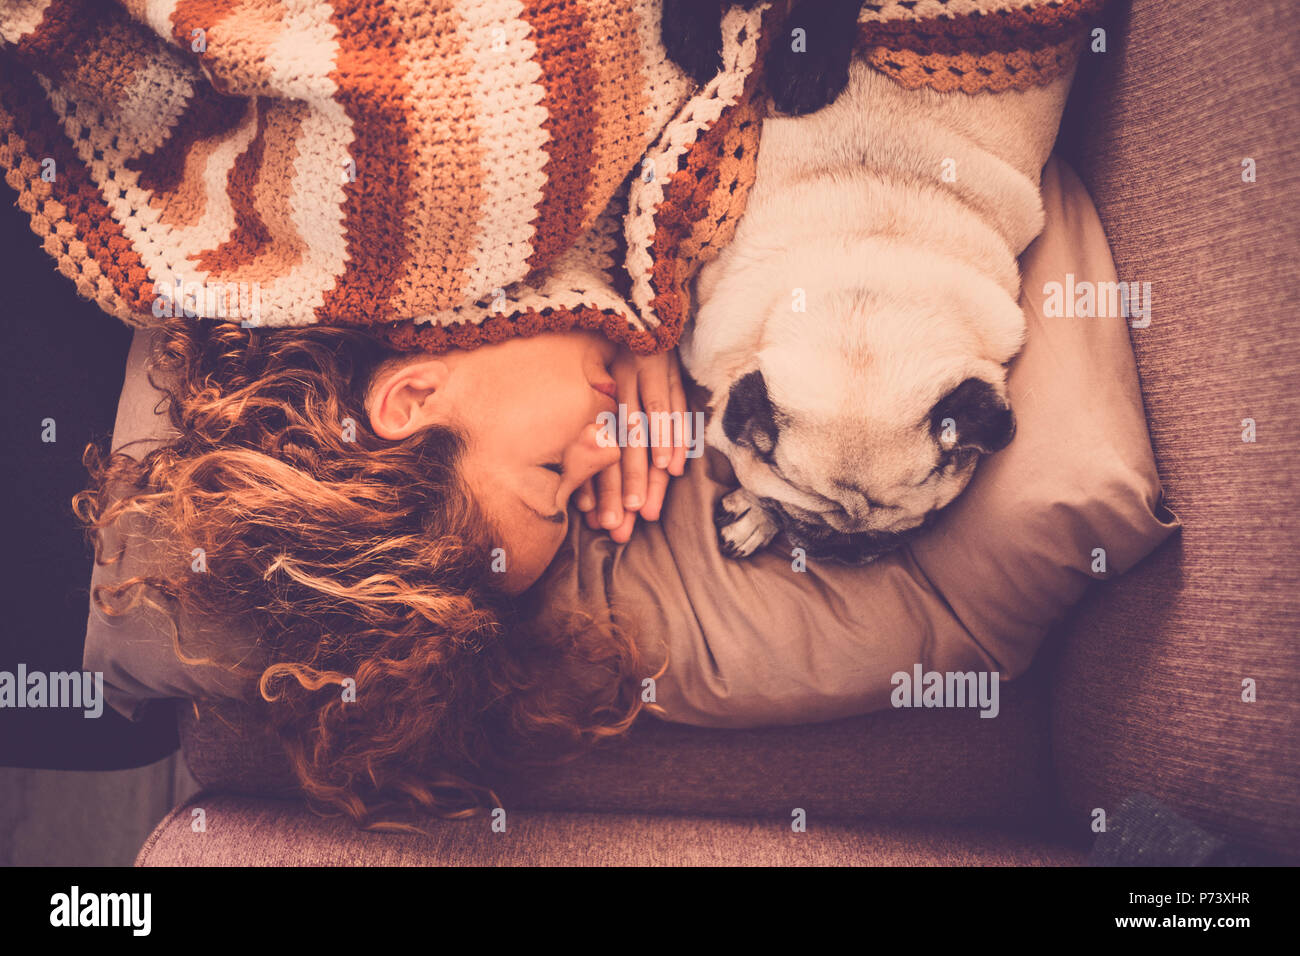 Bella giovane donna pug cane dormire insieme a casa in una tenera e dolce scena romantica. stare più vicino con amore e amicizia. rapporto vero essere Foto Stock